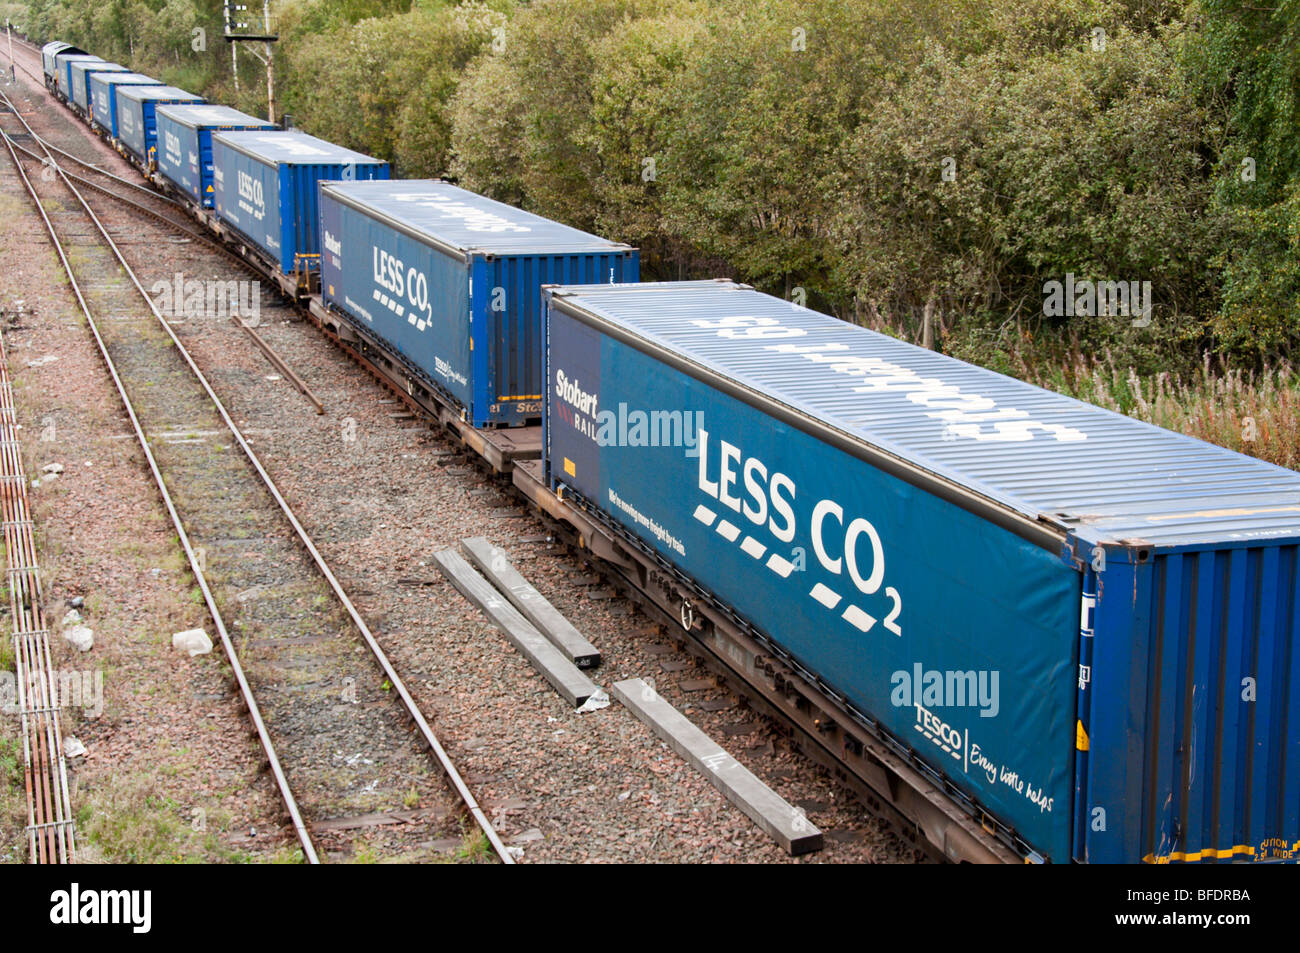 Les conteneurs de transport ferroviaire Tesco supermarché de marchandises avec moins de CO2 à Grangemouth en Ecosse Banque D'Images